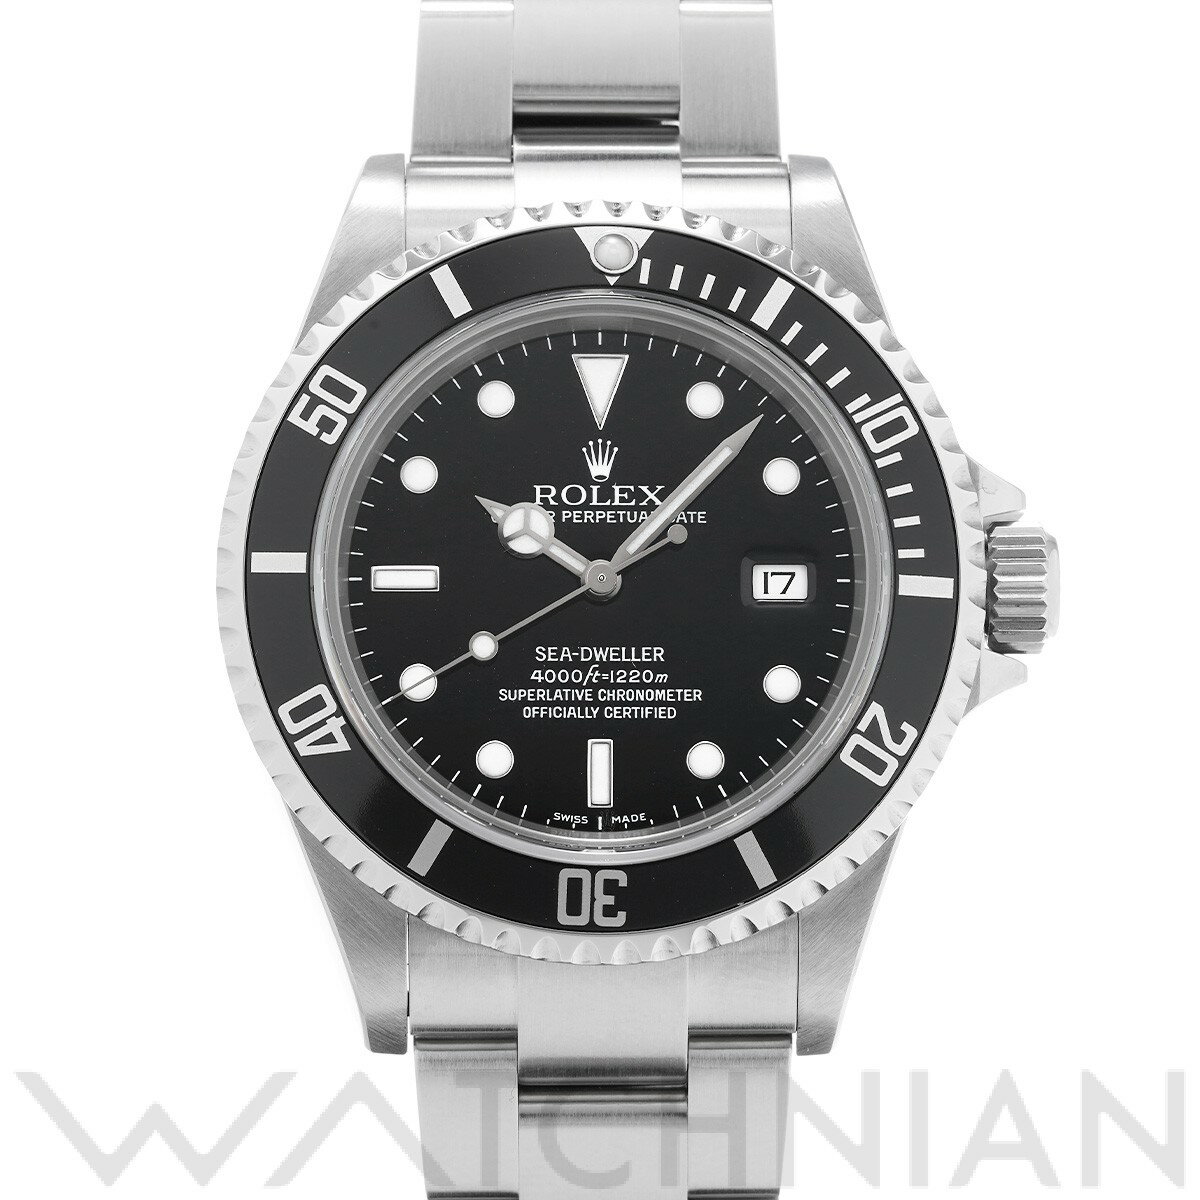 【ローン60回払い無金利】【中古】 ロレックス ROLEX シードゥエラー 16600 M番(2007年頃製造) ブラック メンズ 腕時計 ロレックス 時計 高級腕時計 ブランド